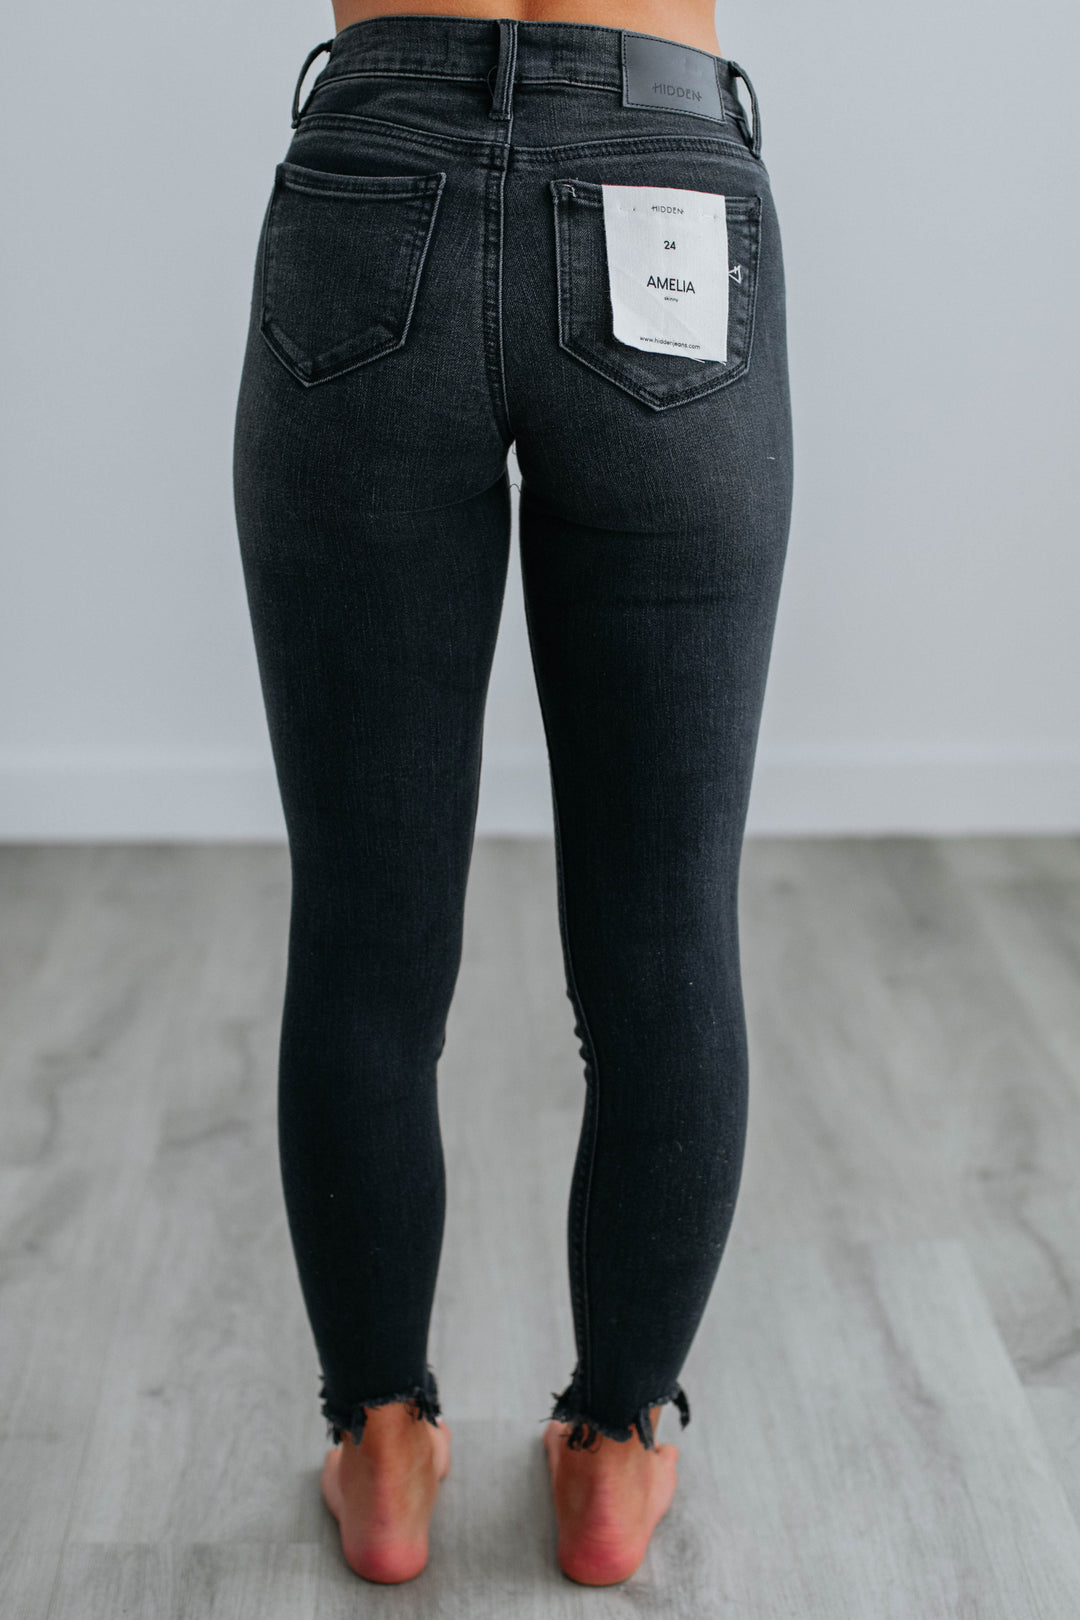 Amelia Hidden Jeans